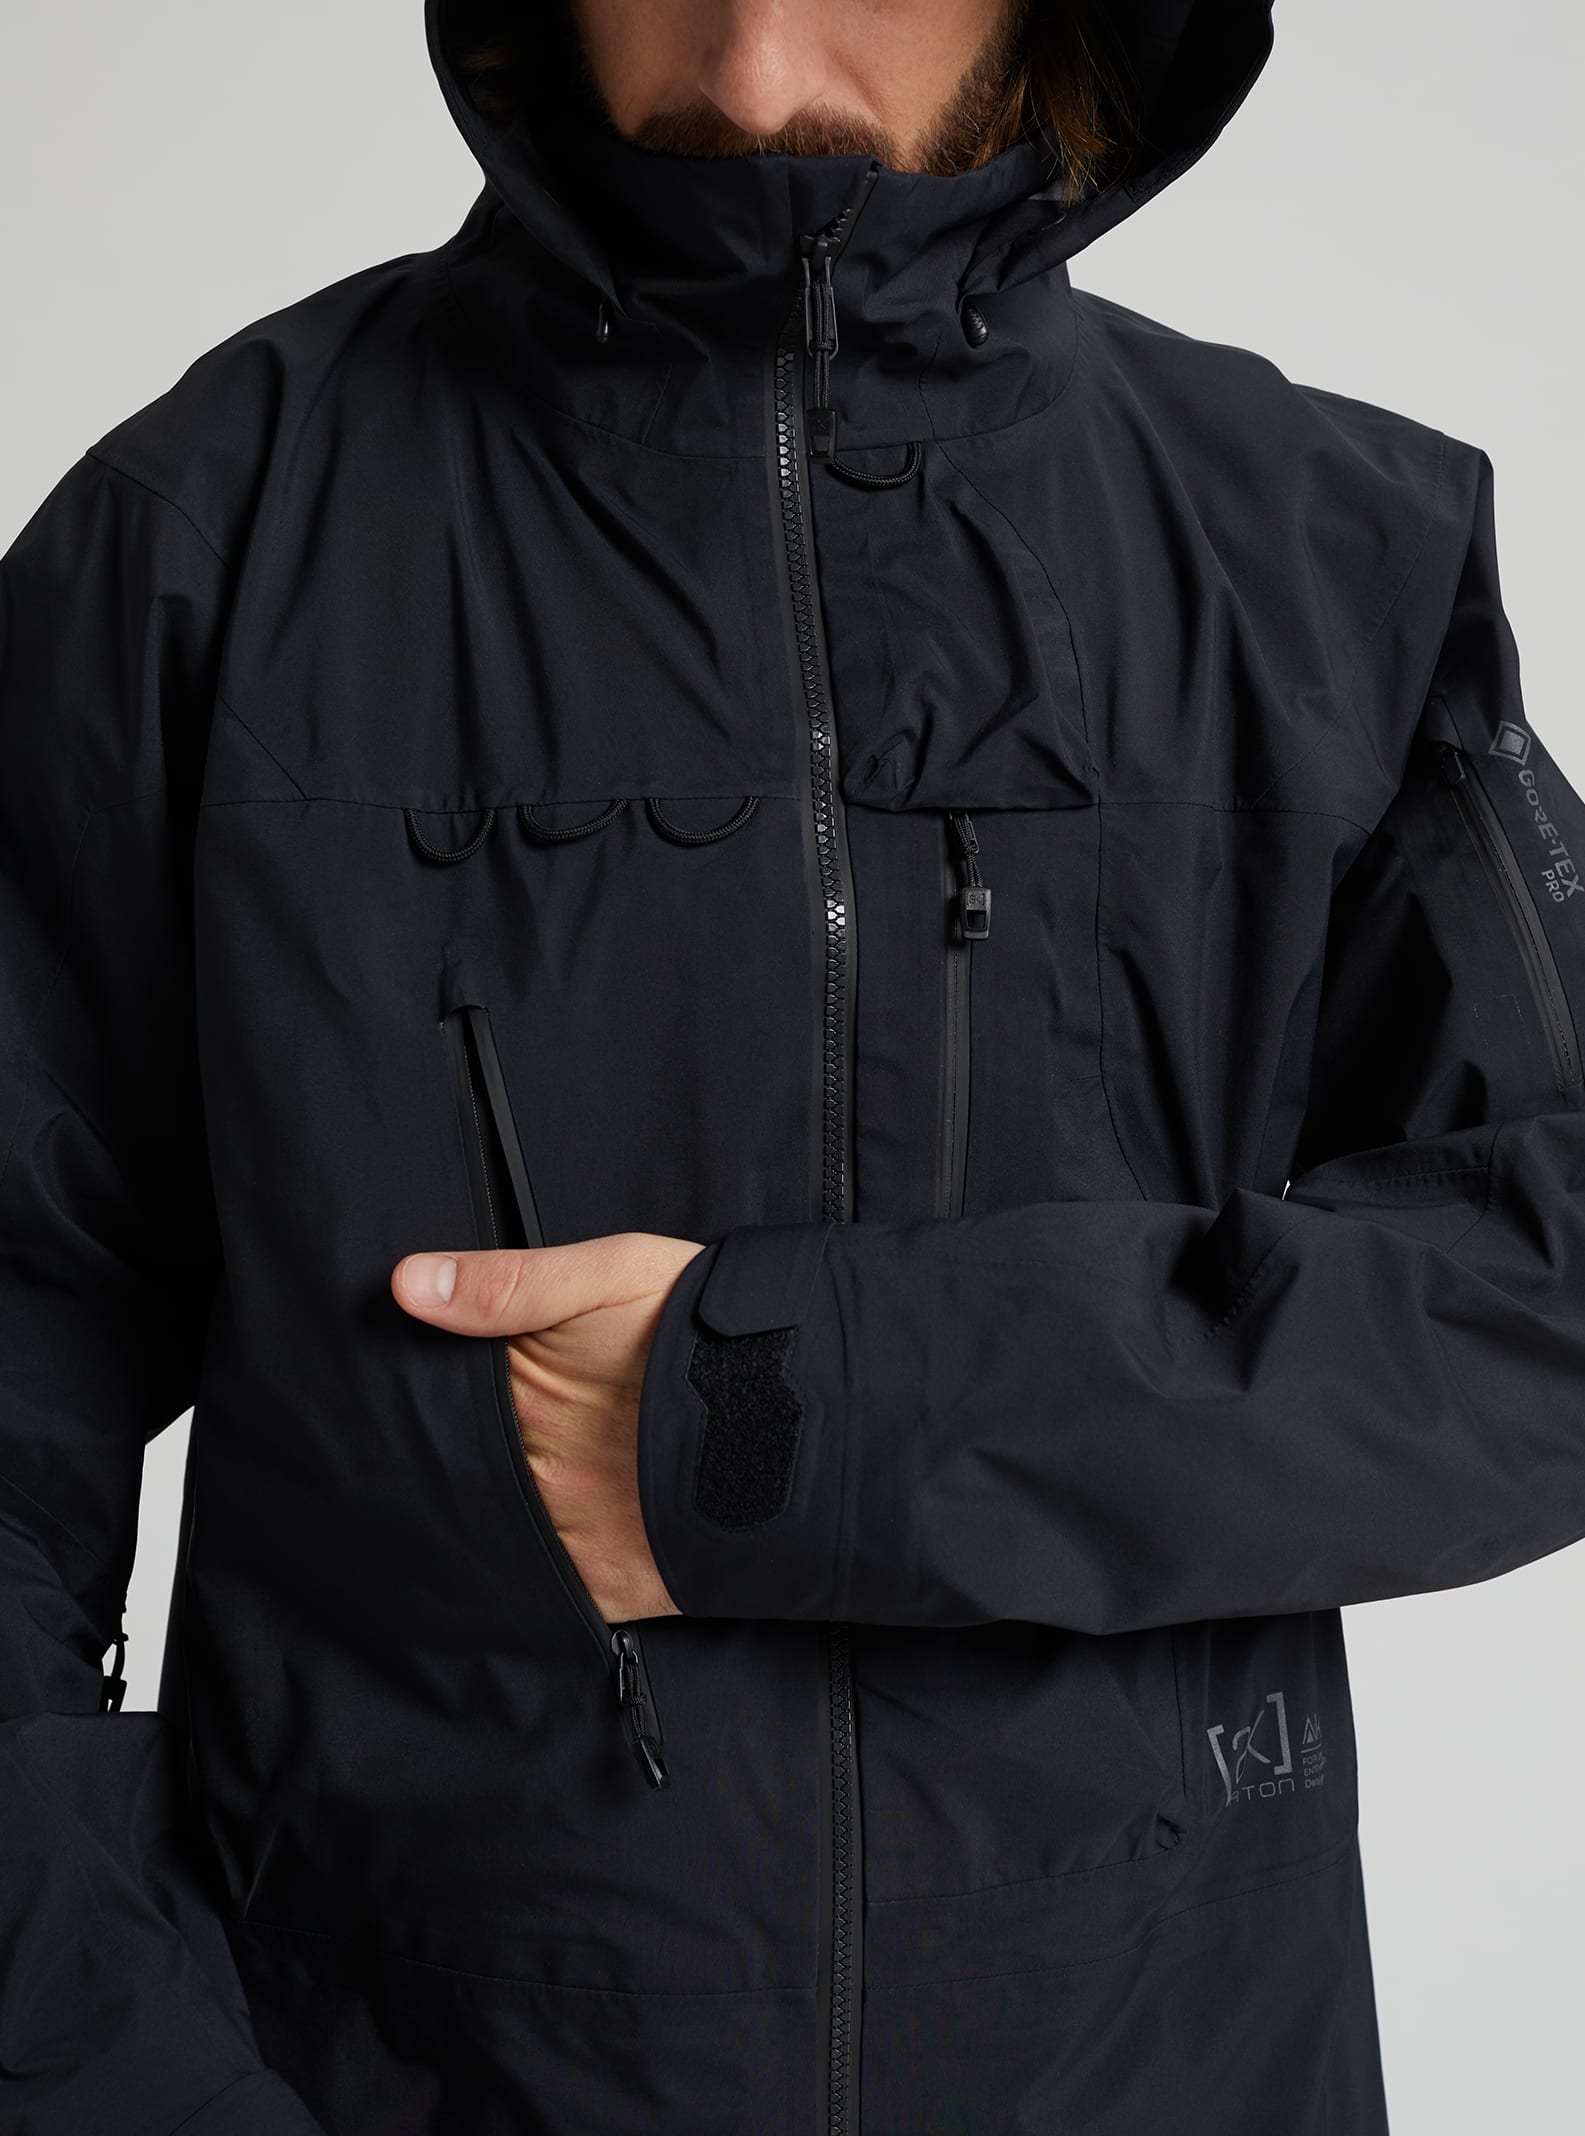 ak457 guide jacket s black